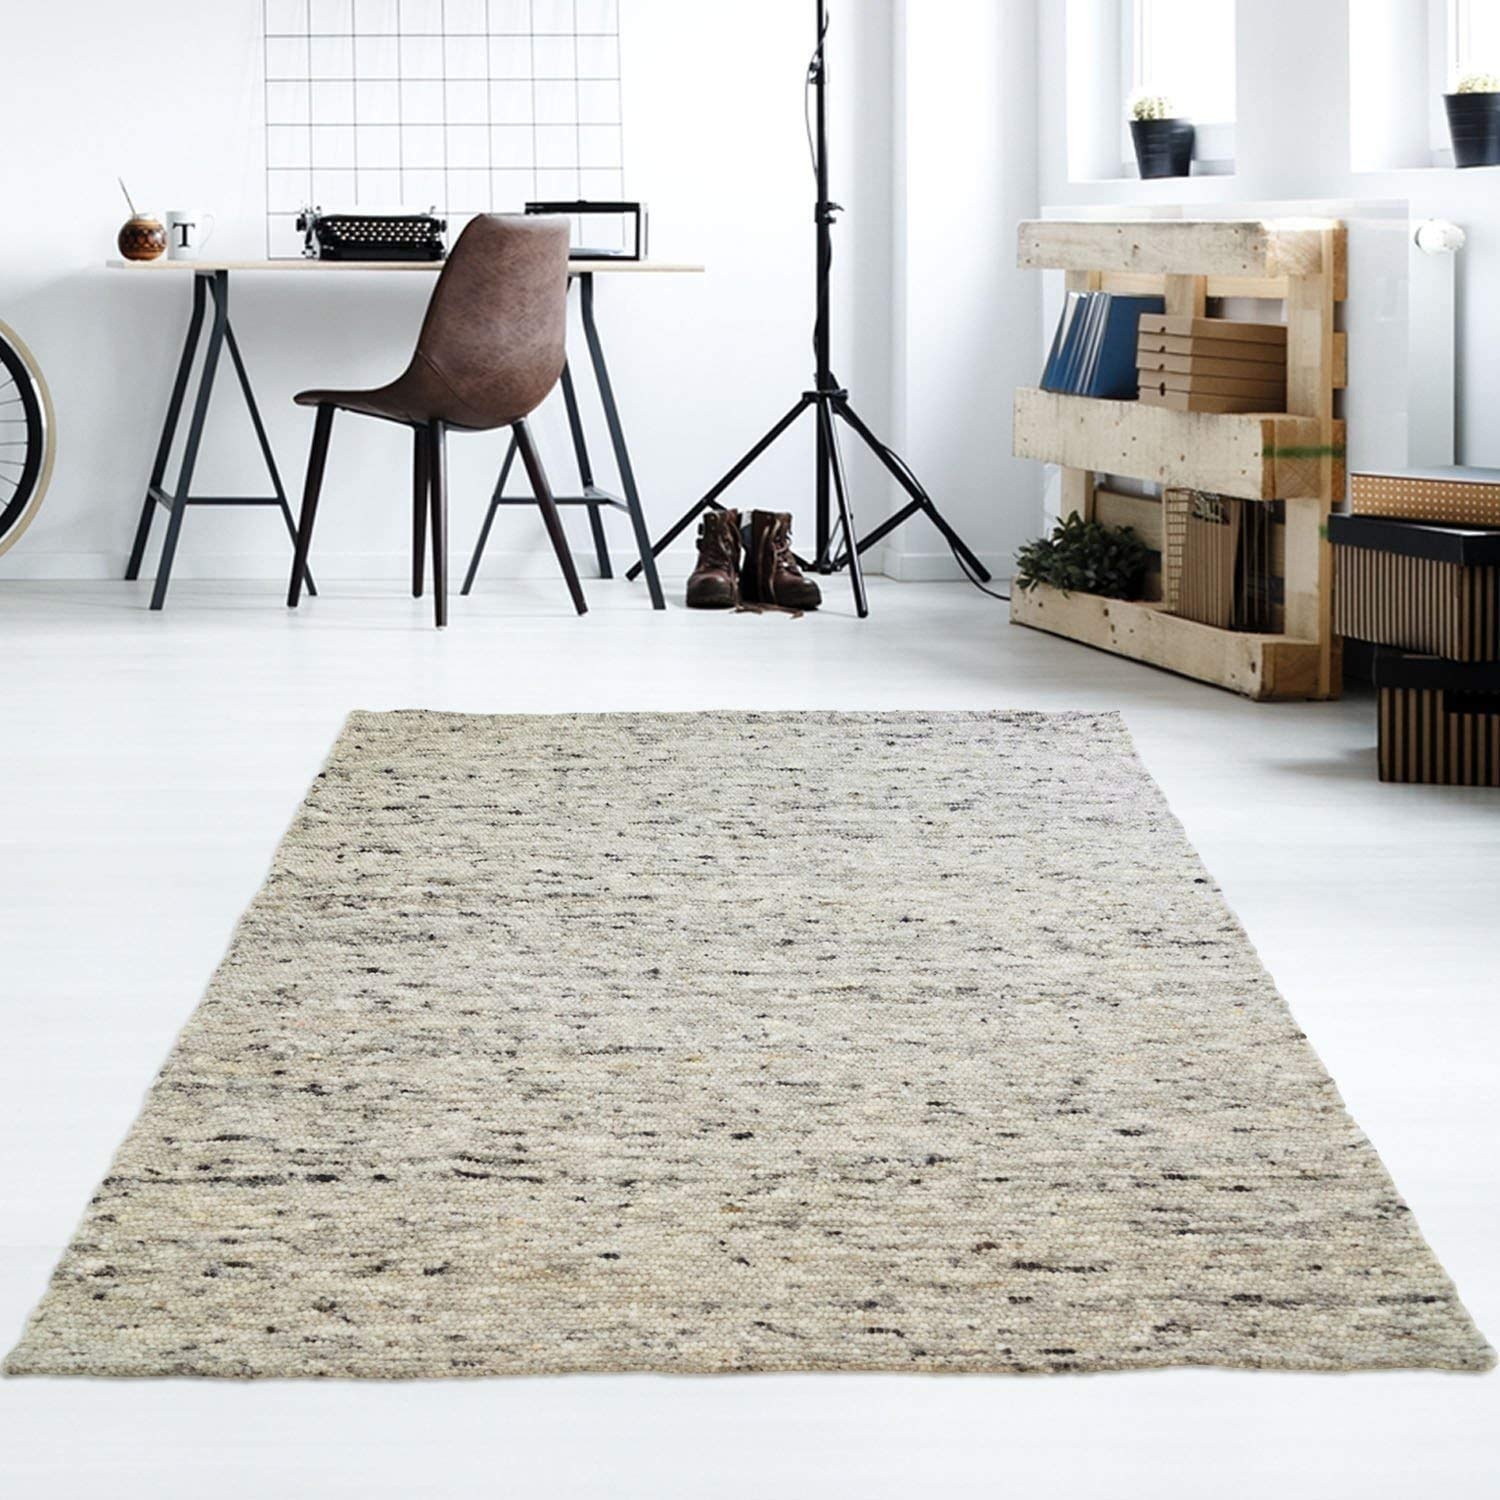 Taracarpet Moderner Handweb Teppich Alpina handgewebt aus Schurwolle für Wohnzimmer, Esszimmer, Schlafzimmer und die Küche geeignet (130 x 190 cm, 30 Grau meliert)